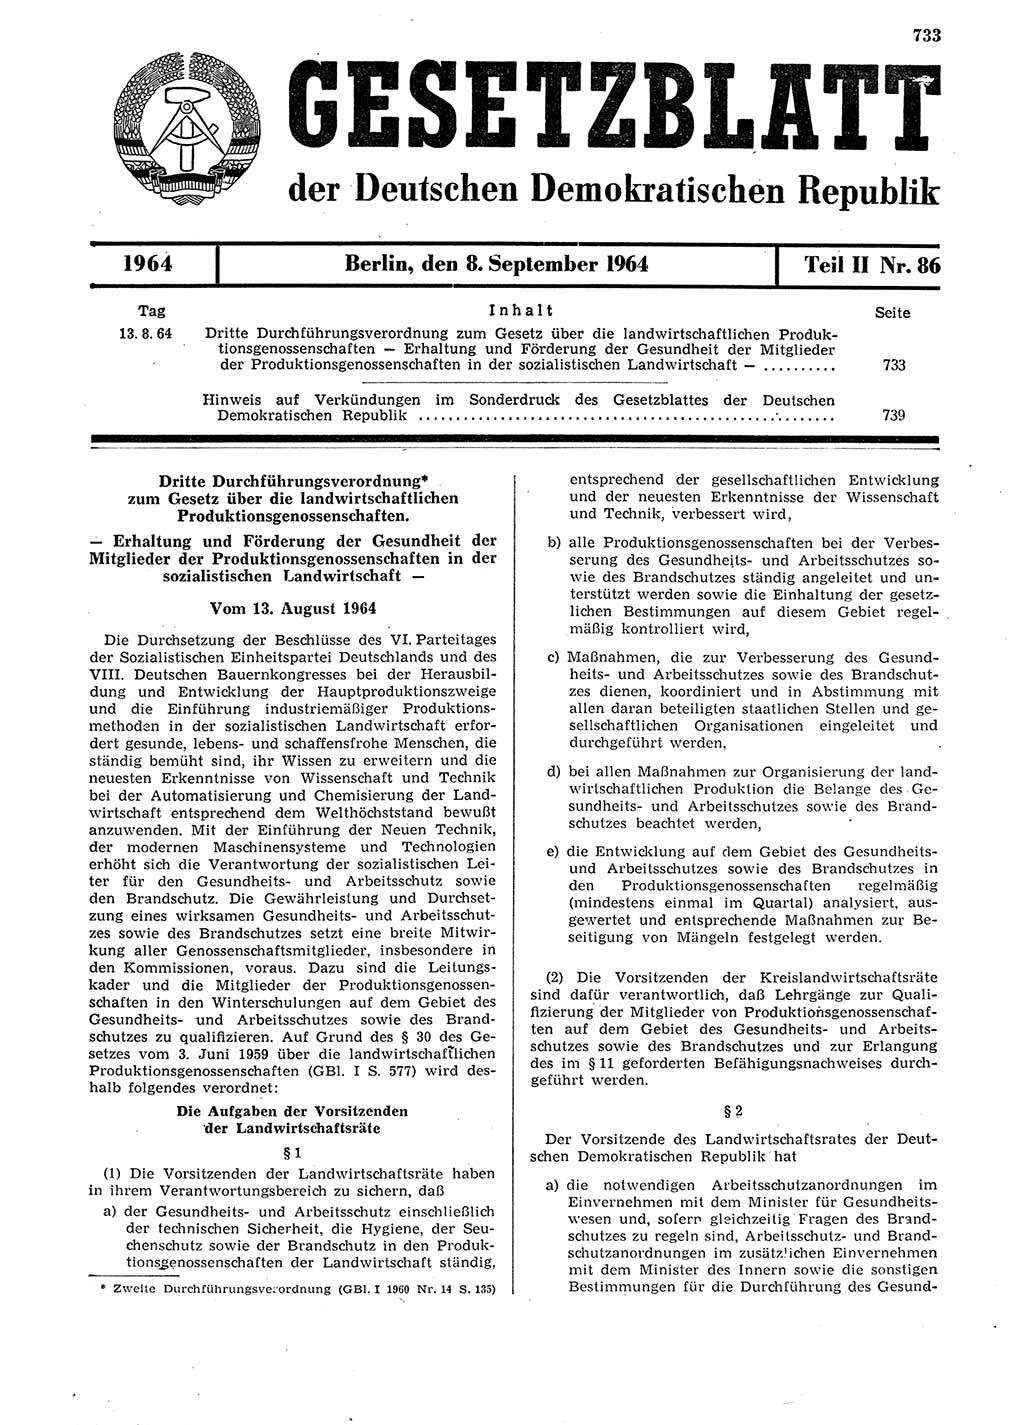 Gesetzblatt (GBl.) der Deutschen Demokratischen Republik (DDR) Teil ⅠⅠ 1964, Seite 733 (GBl. DDR ⅠⅠ 1964, S. 733)